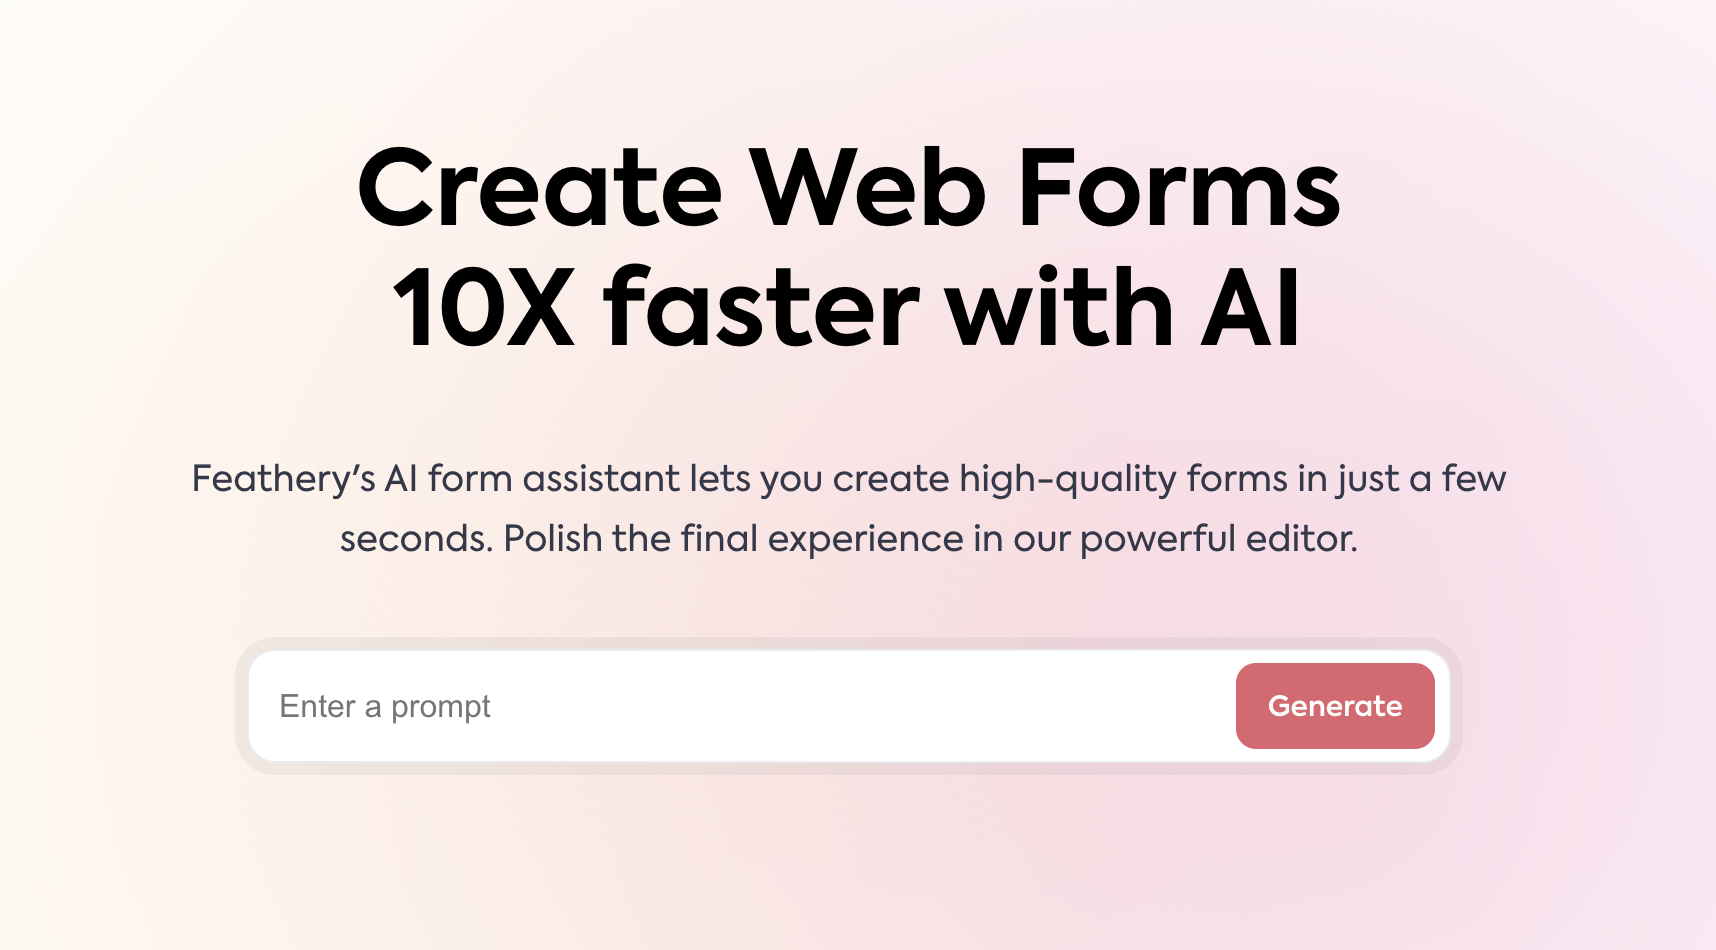 Feathery - une plate-forme d'assistance aux formulaires pour créer et personnaliser les formulaires Web